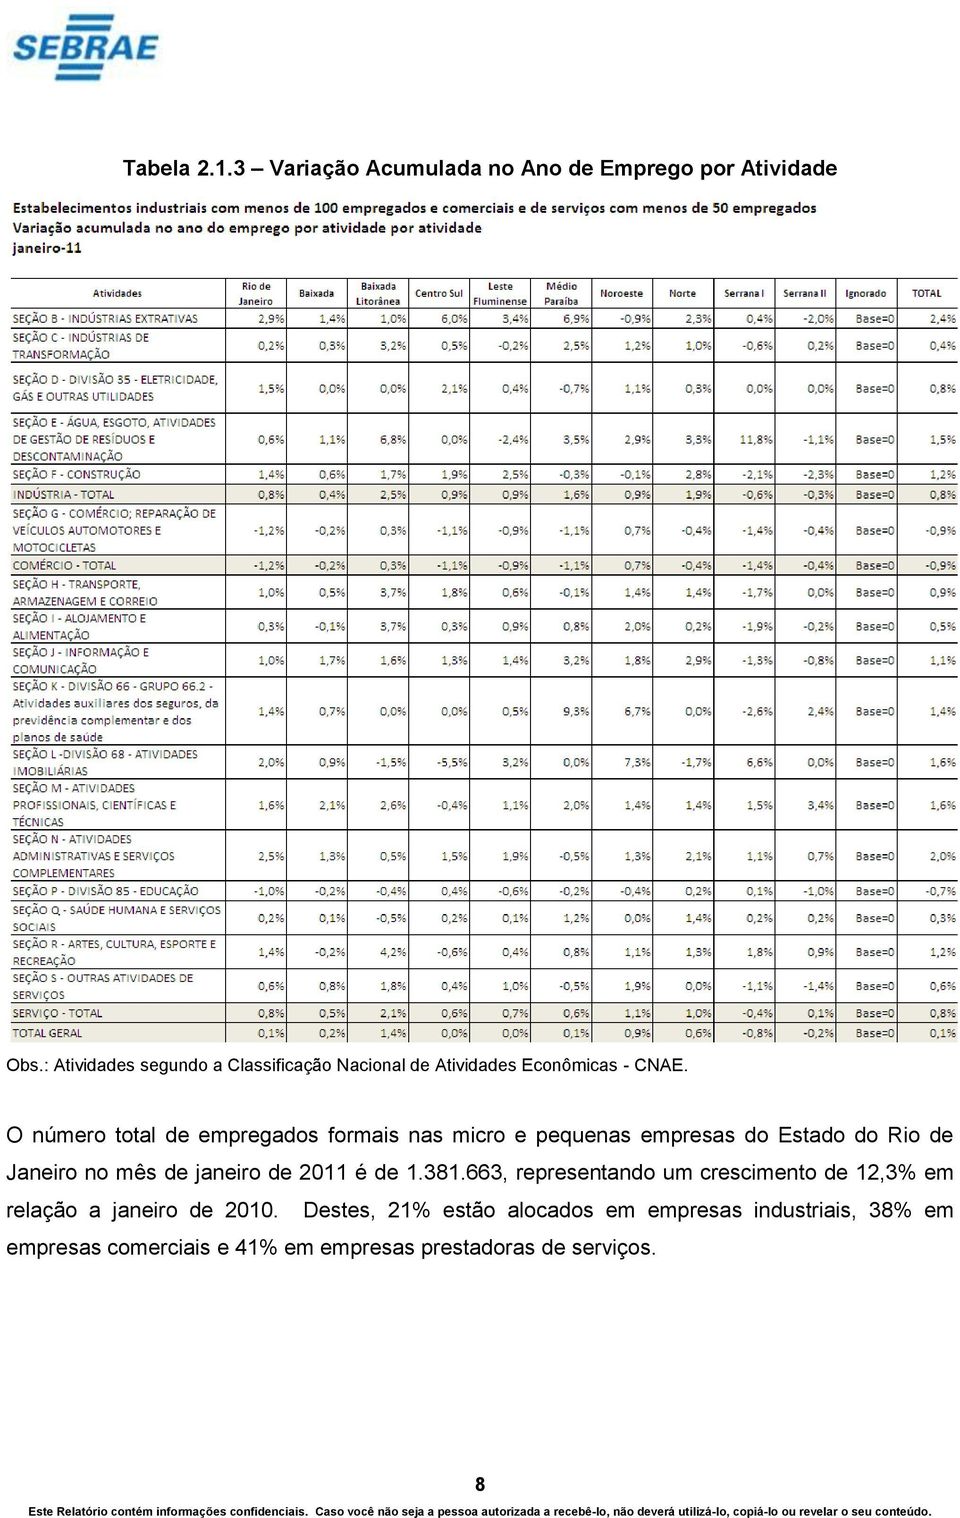 O número total de empregados formais nas micro e pequenas empresas do Estado do Rio de Janeiro no mês de janeiro de